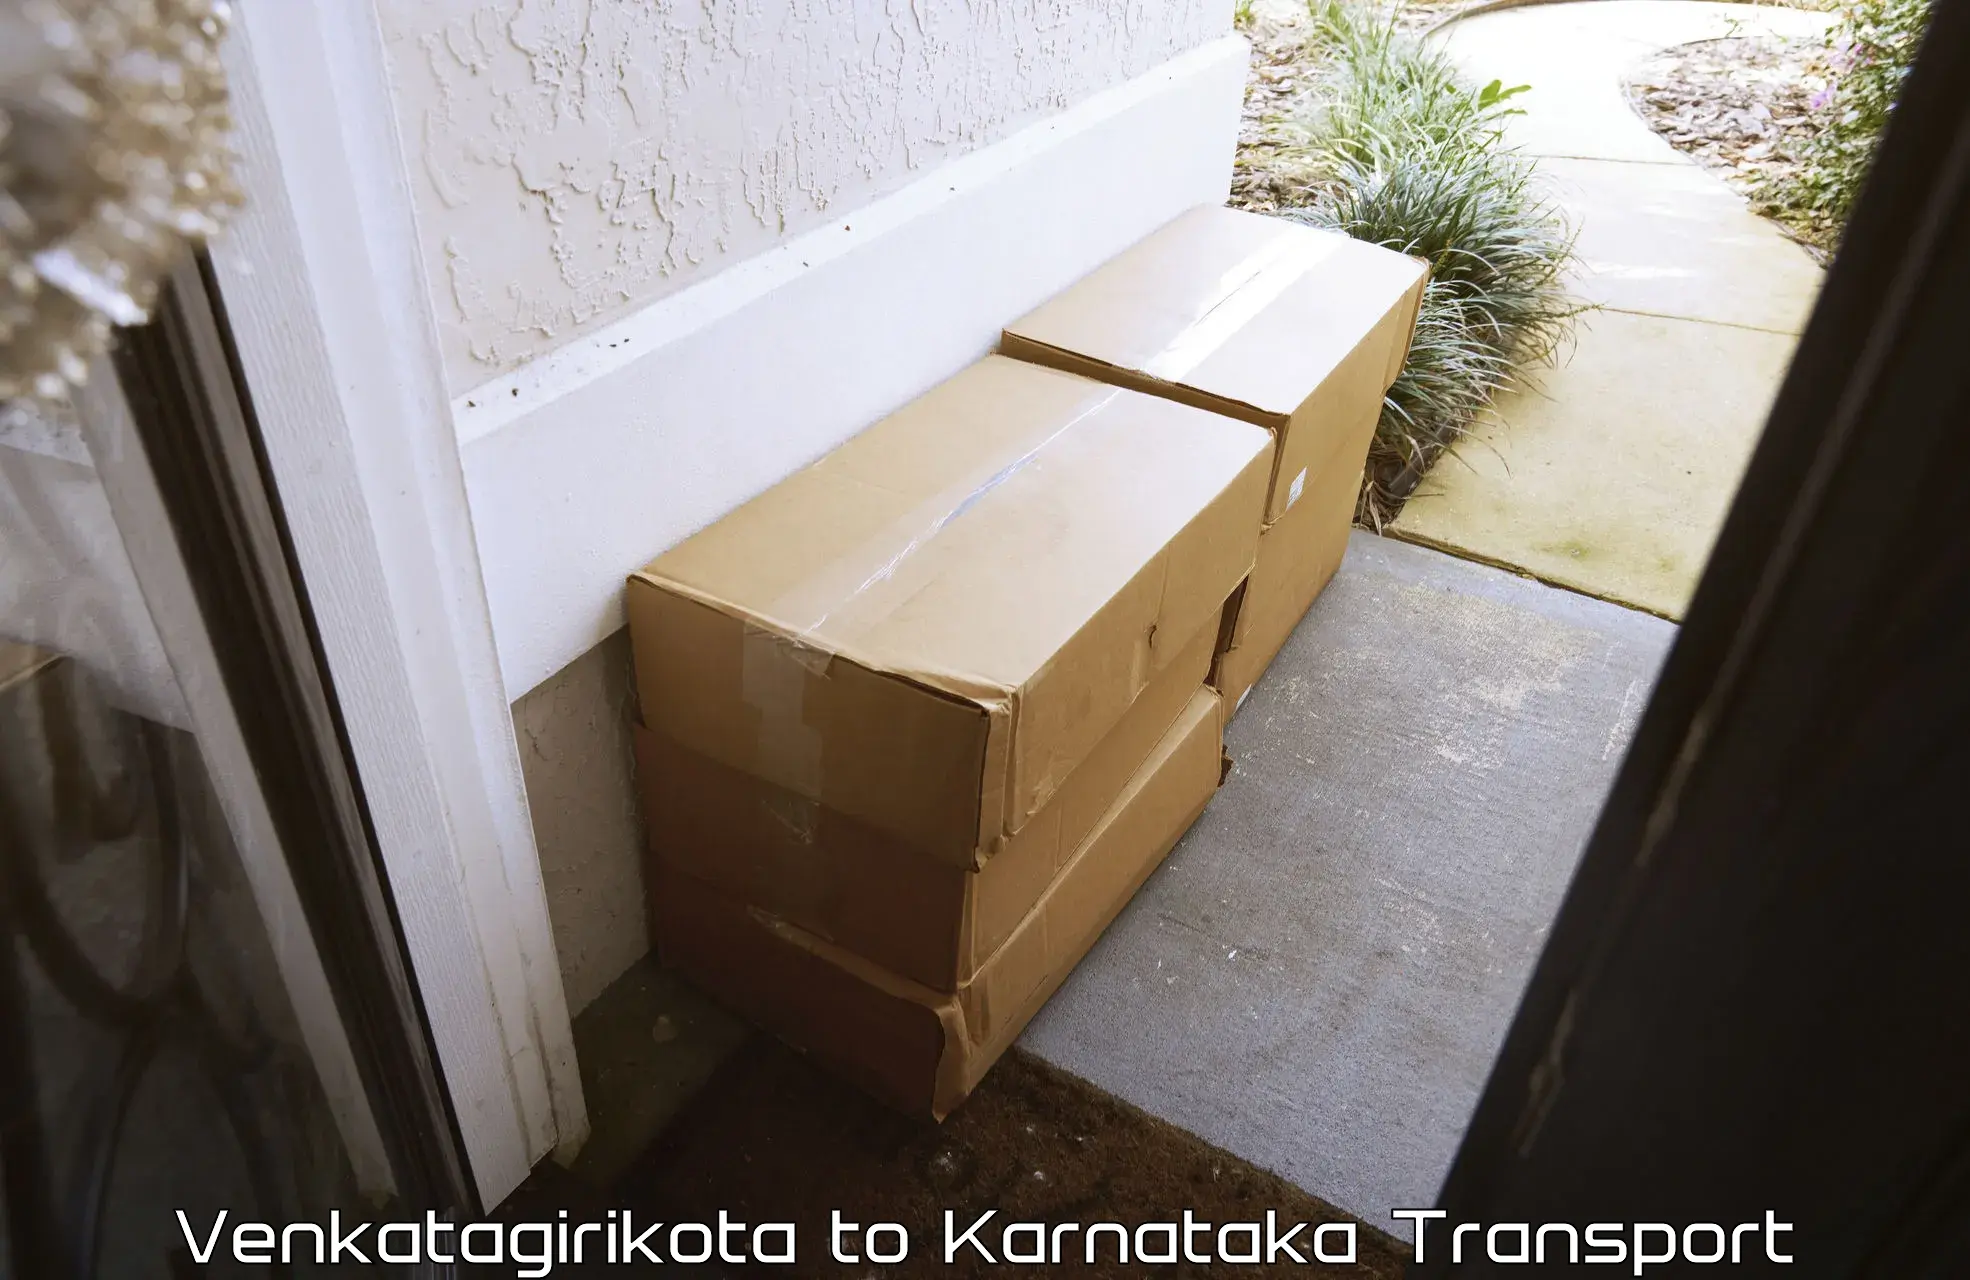 Air freight transport services Venkatagirikota to Kudligi